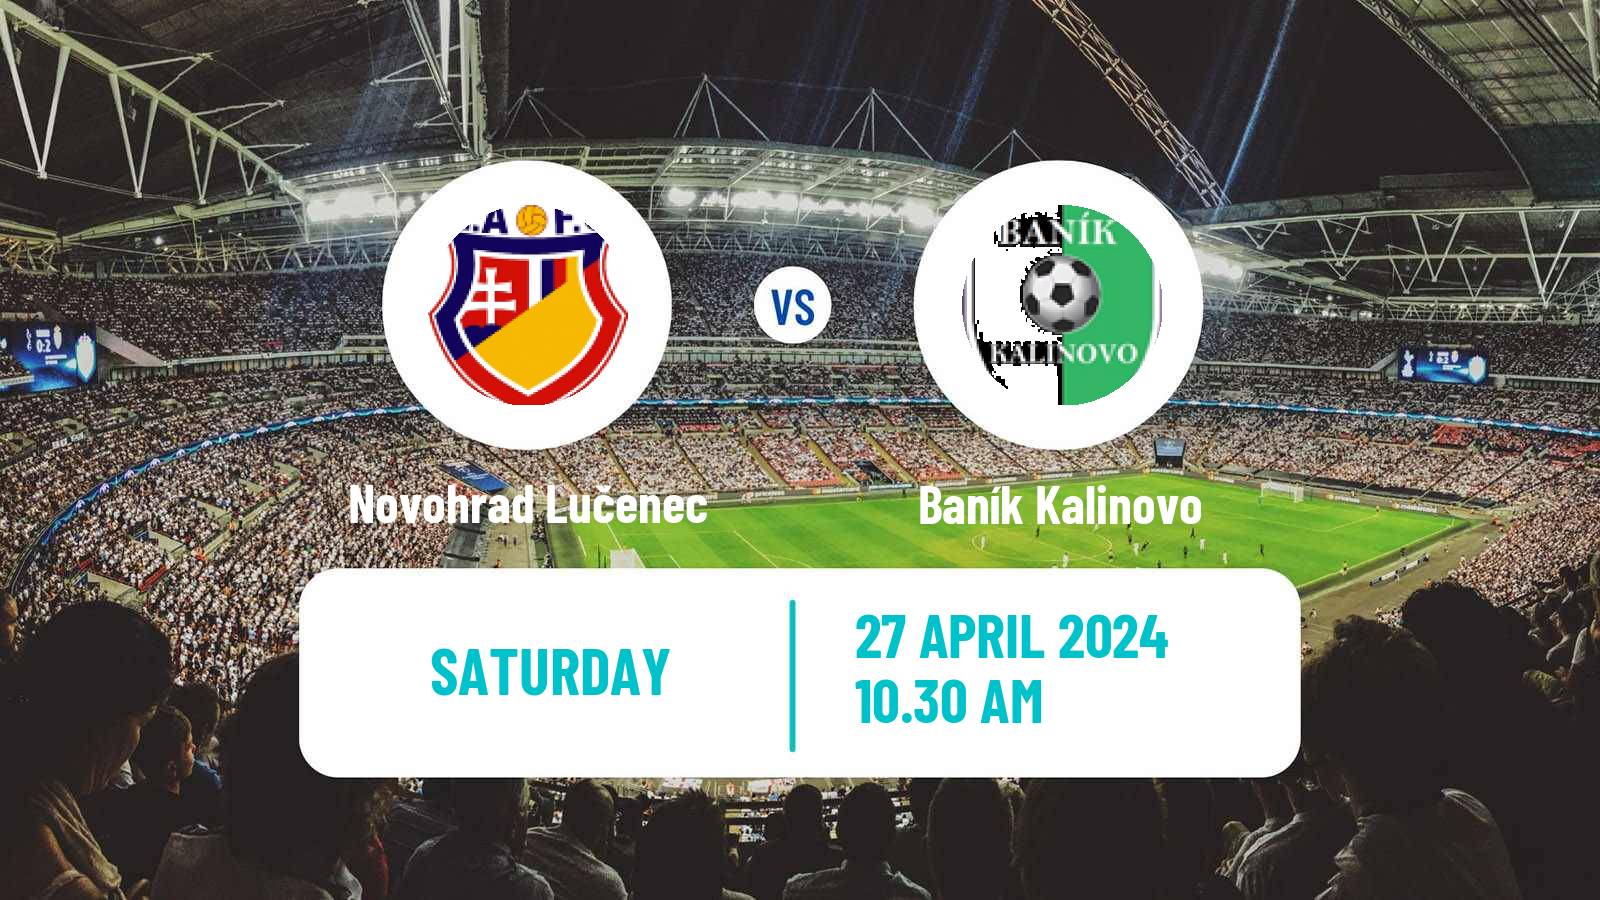 Soccer Slovak 3 Liga East Novohrad Lučenec - Baník Kalinovo